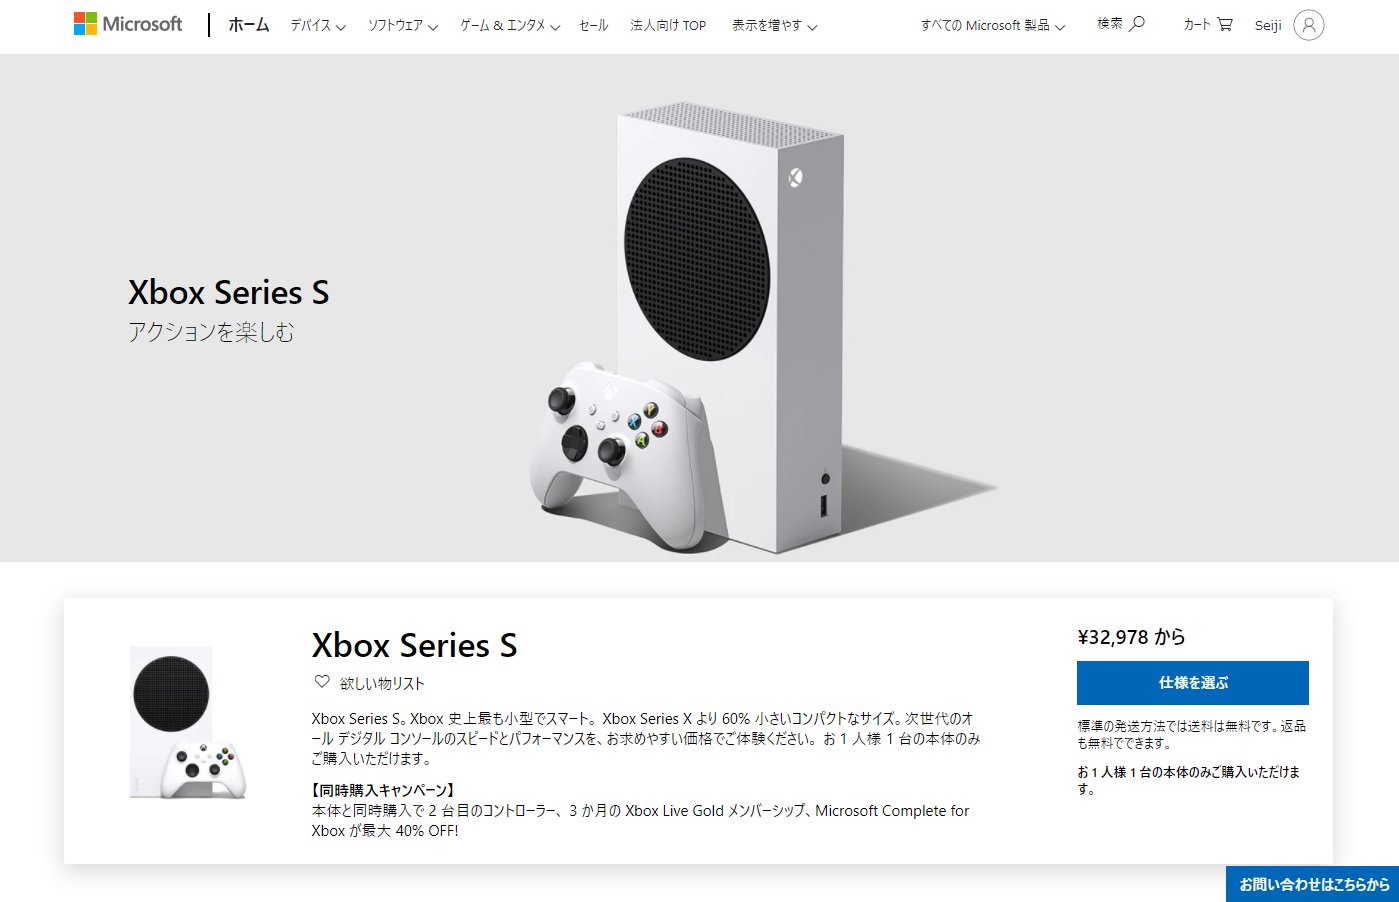 【新品未開封】Microsoft XBOX Series S 本体